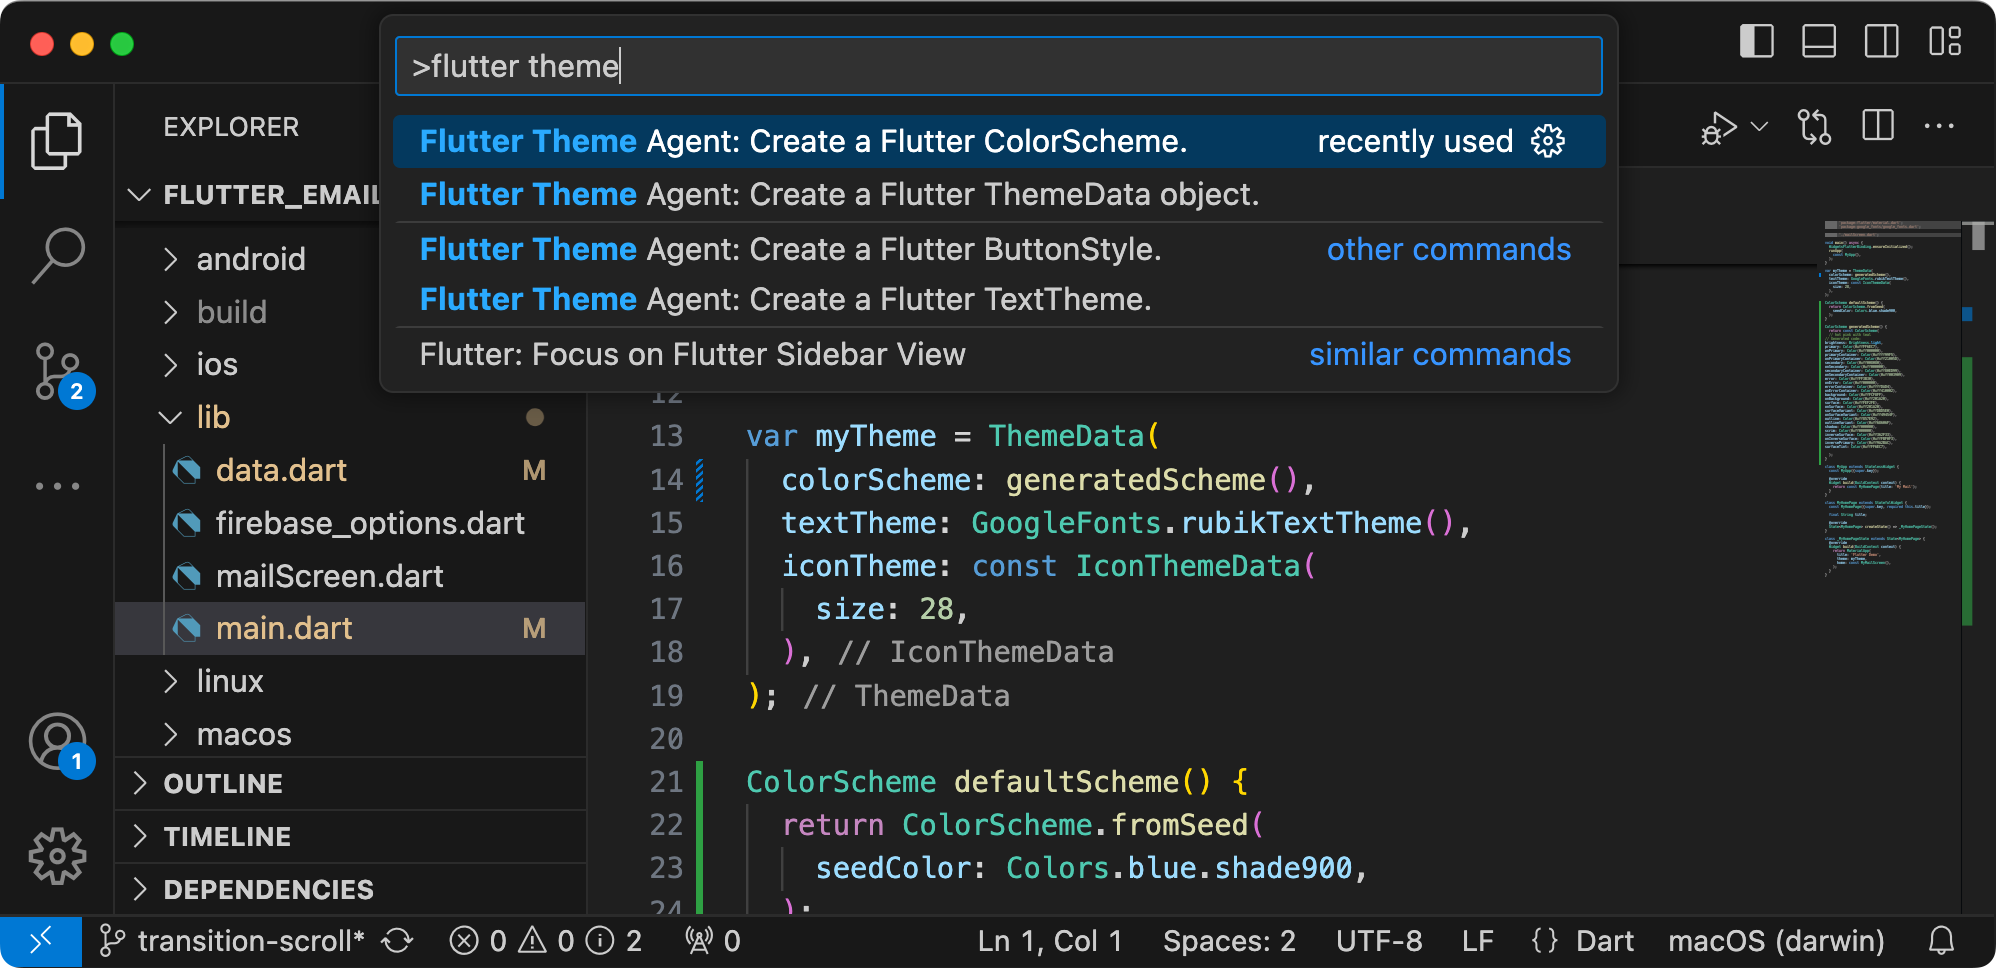 Captura de tela do Flutter Theme Agent em execução no VS Code